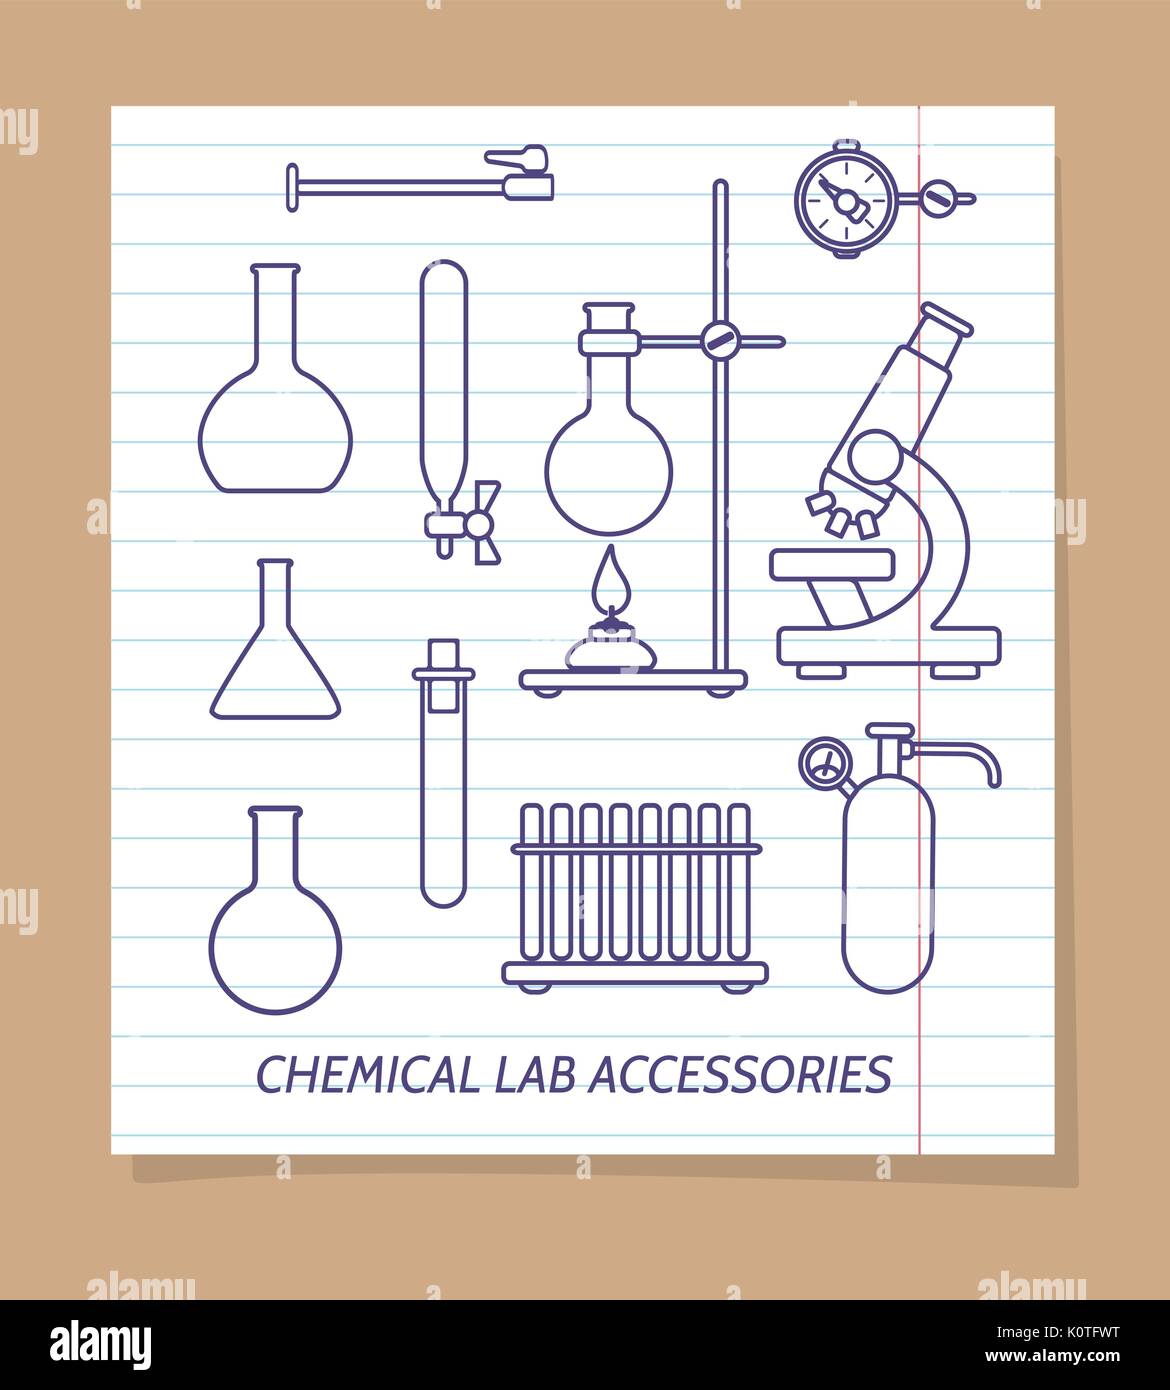 Ligne d'accessoires de laboratoire chimique des icônes sur la page  d'illustration vectorielle, ordinateur portable Image Vectorielle Stock -  Alamy